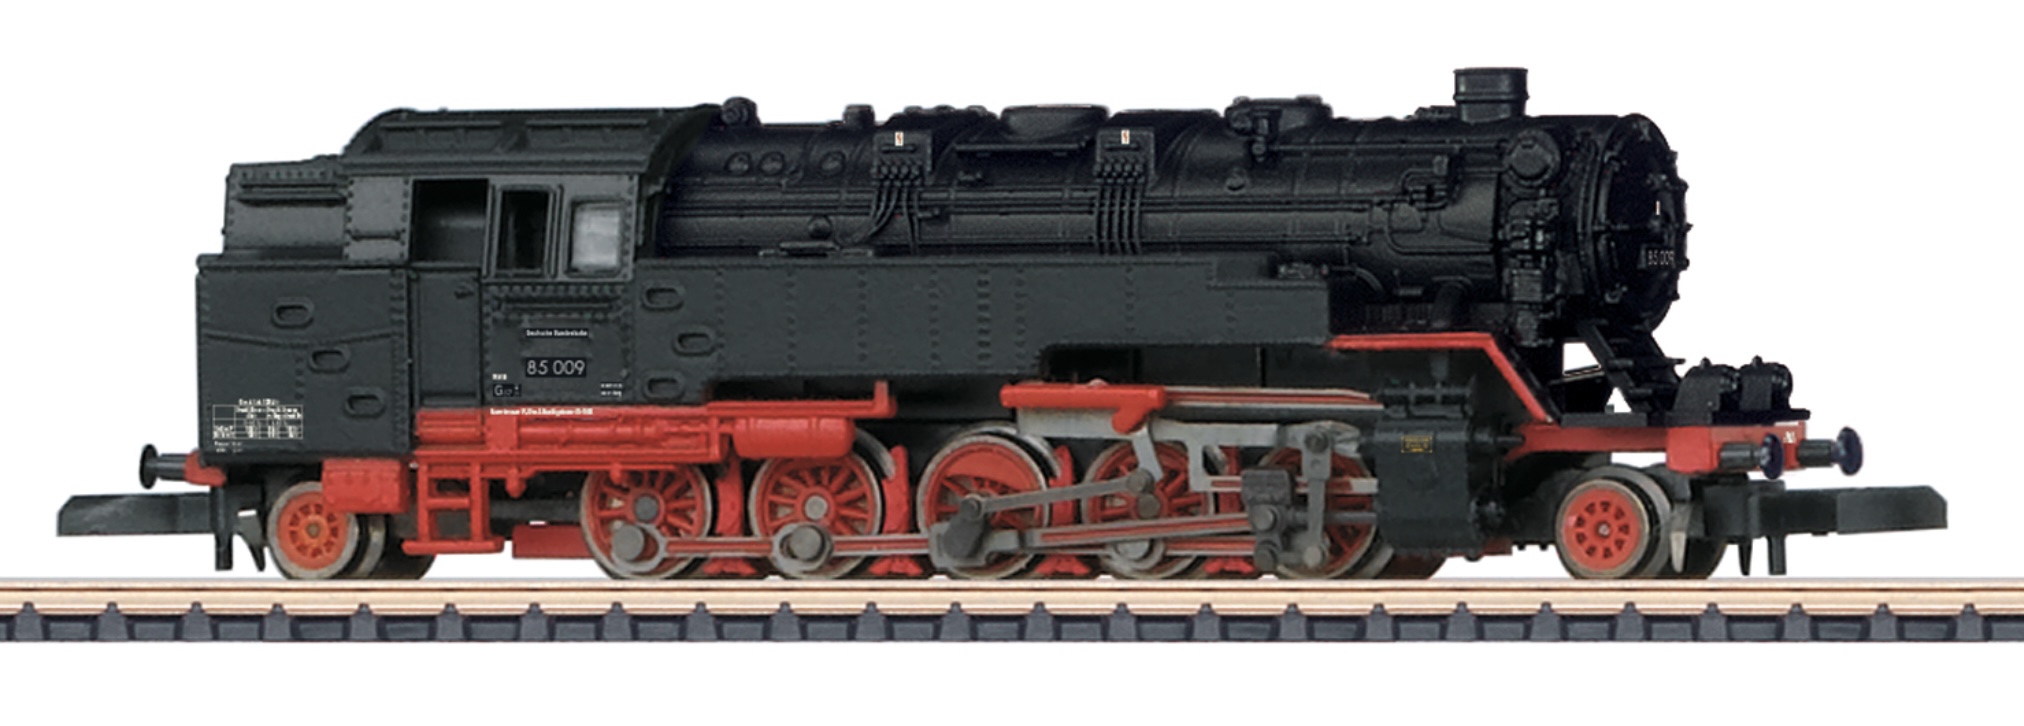 Z Scale - Märklin - 88931 - Locomotive, Steam, 2-10-2, Class 85, Epoch III - Deutsche Bundesbahn - 85 009